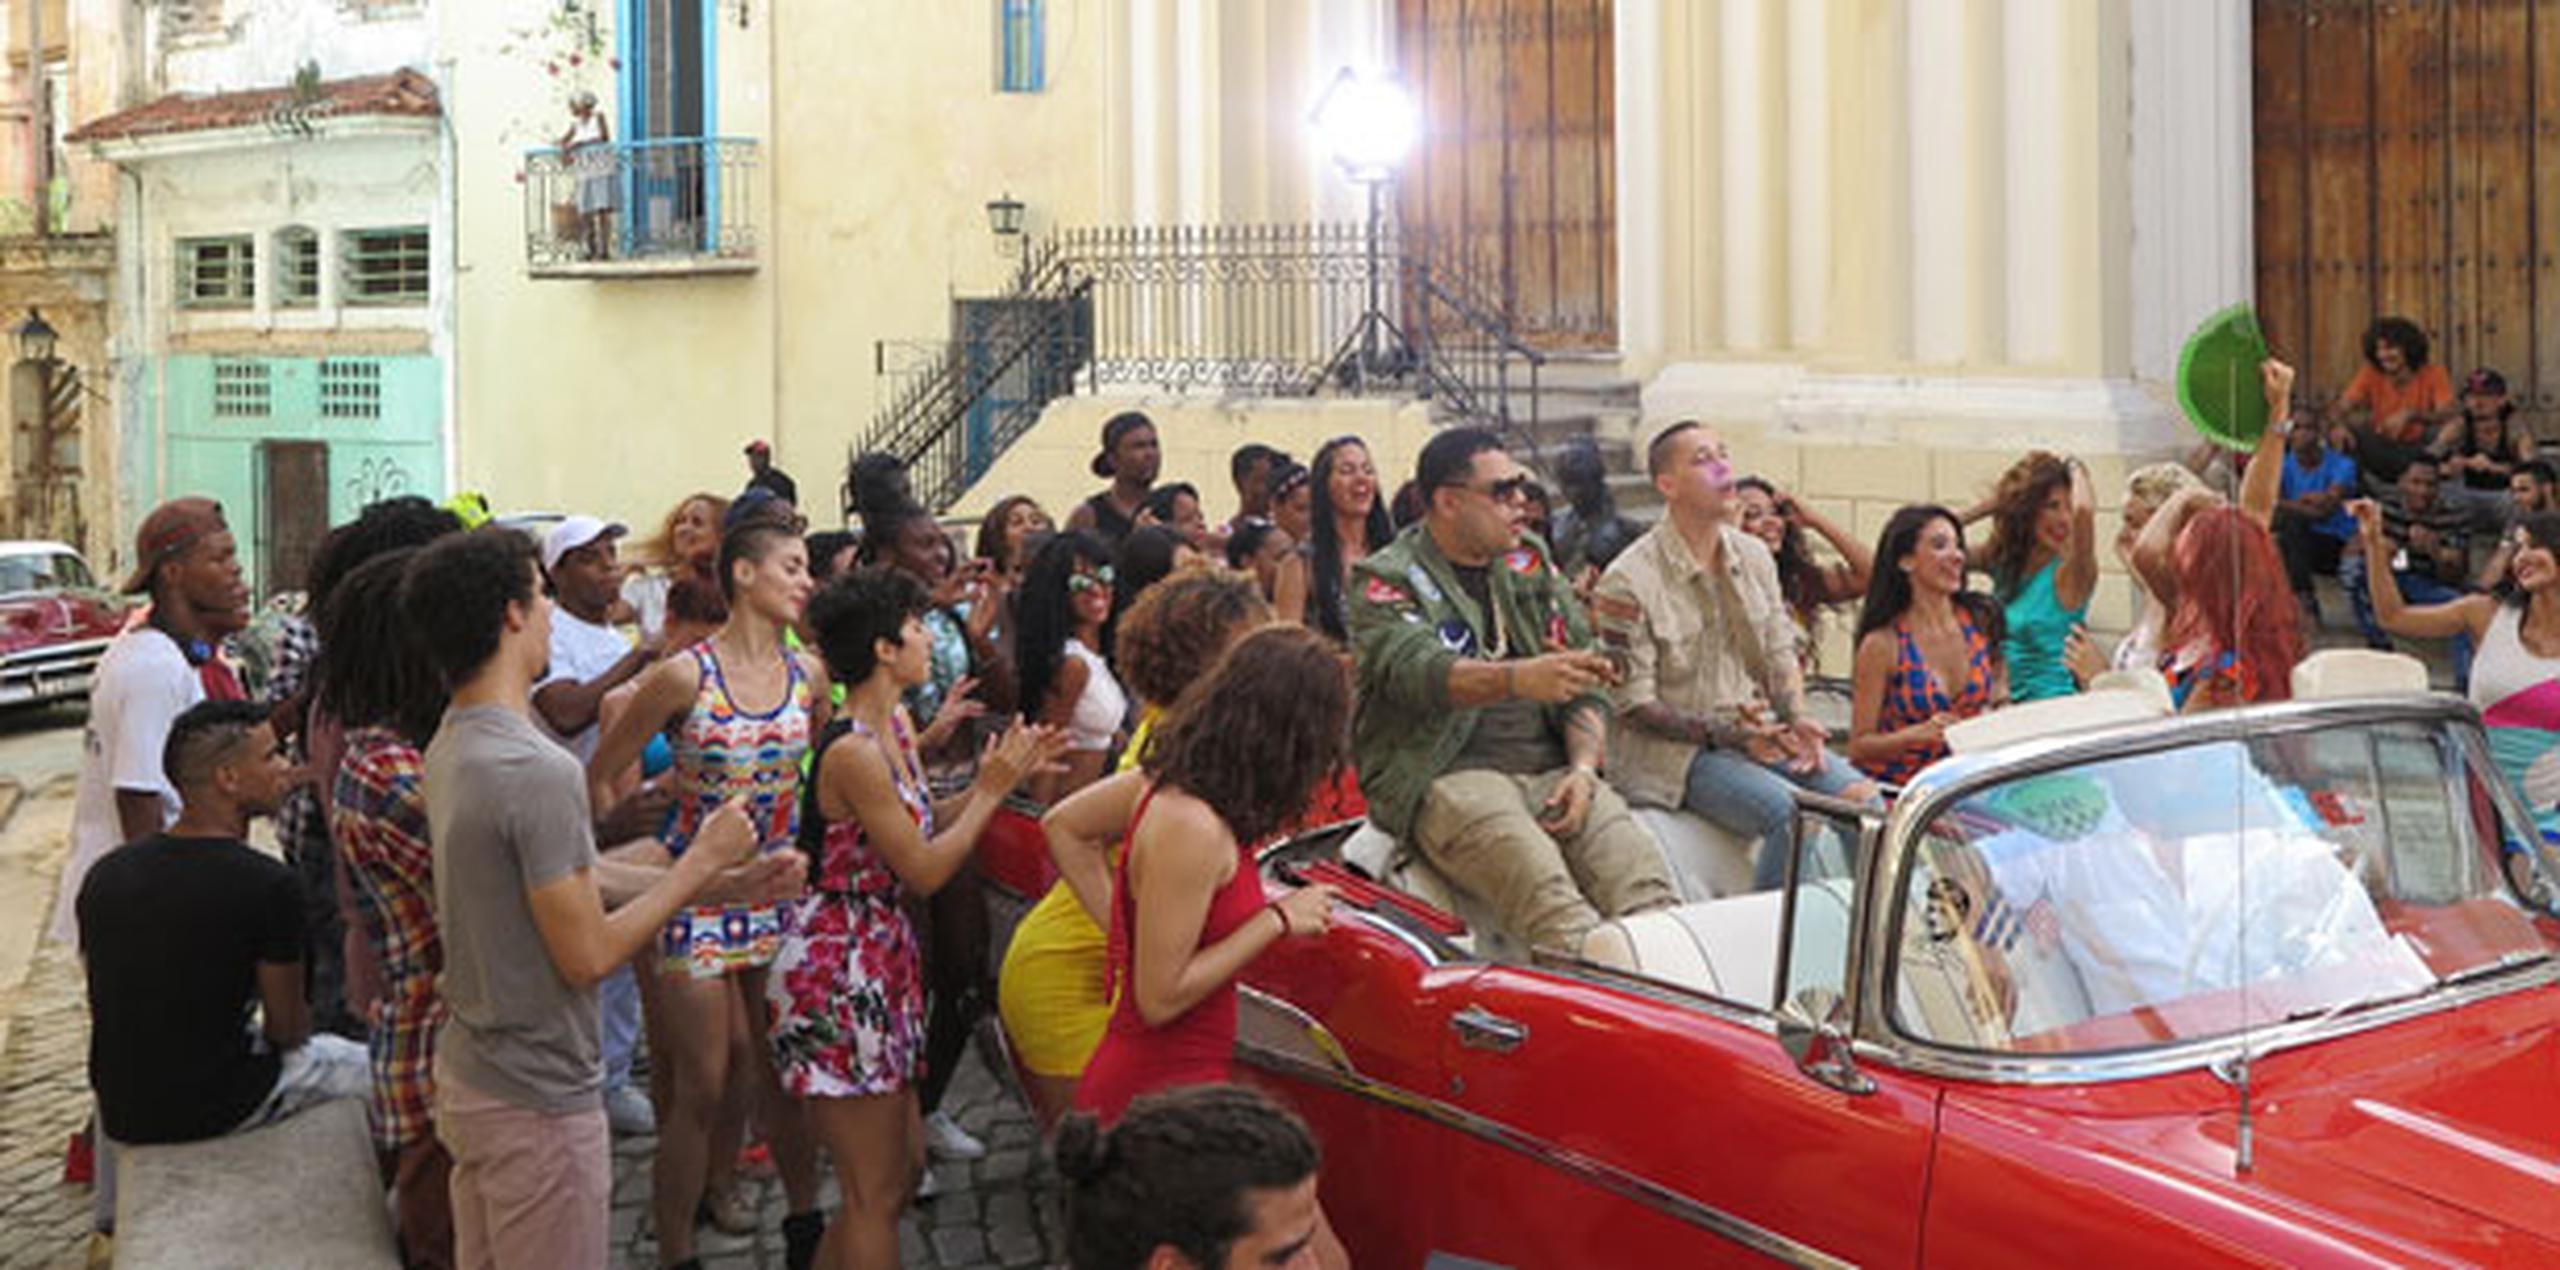 El concepto del videoclip es el de una fiesta callejera, con mucho color y el ritmo del reguetón boricua con timba cubana, en el que destacan los distintivos carros antiguos que se ven en La Habana. (Suministrada)